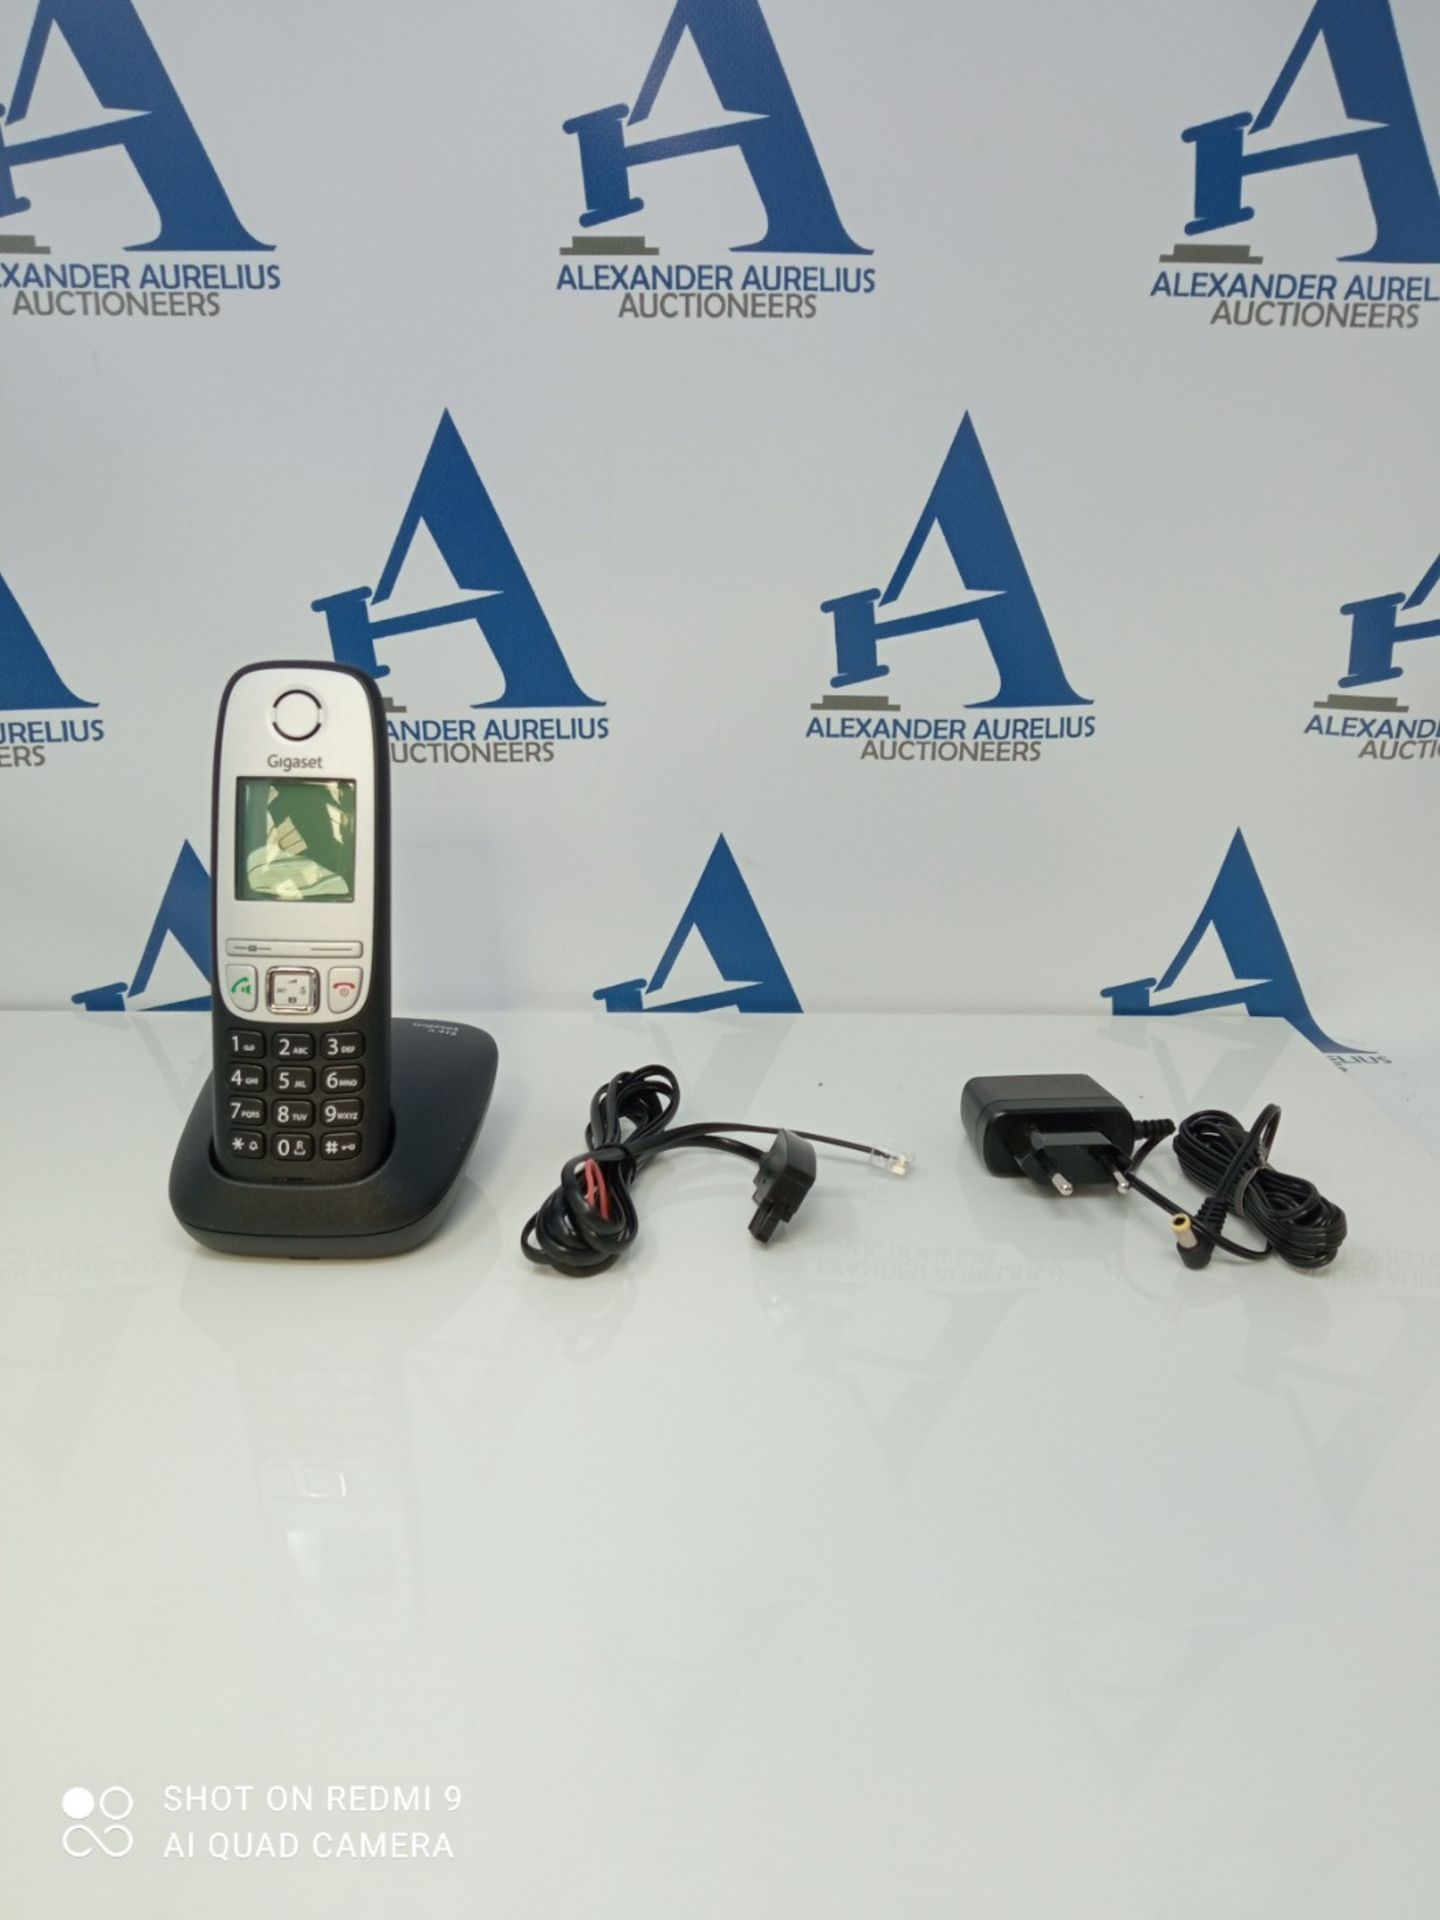 Gigaset A415, Schnurloses Telefon DECT, Freisprechfunktion, Kurzwahltasten, Einfacher - Image 3 of 3